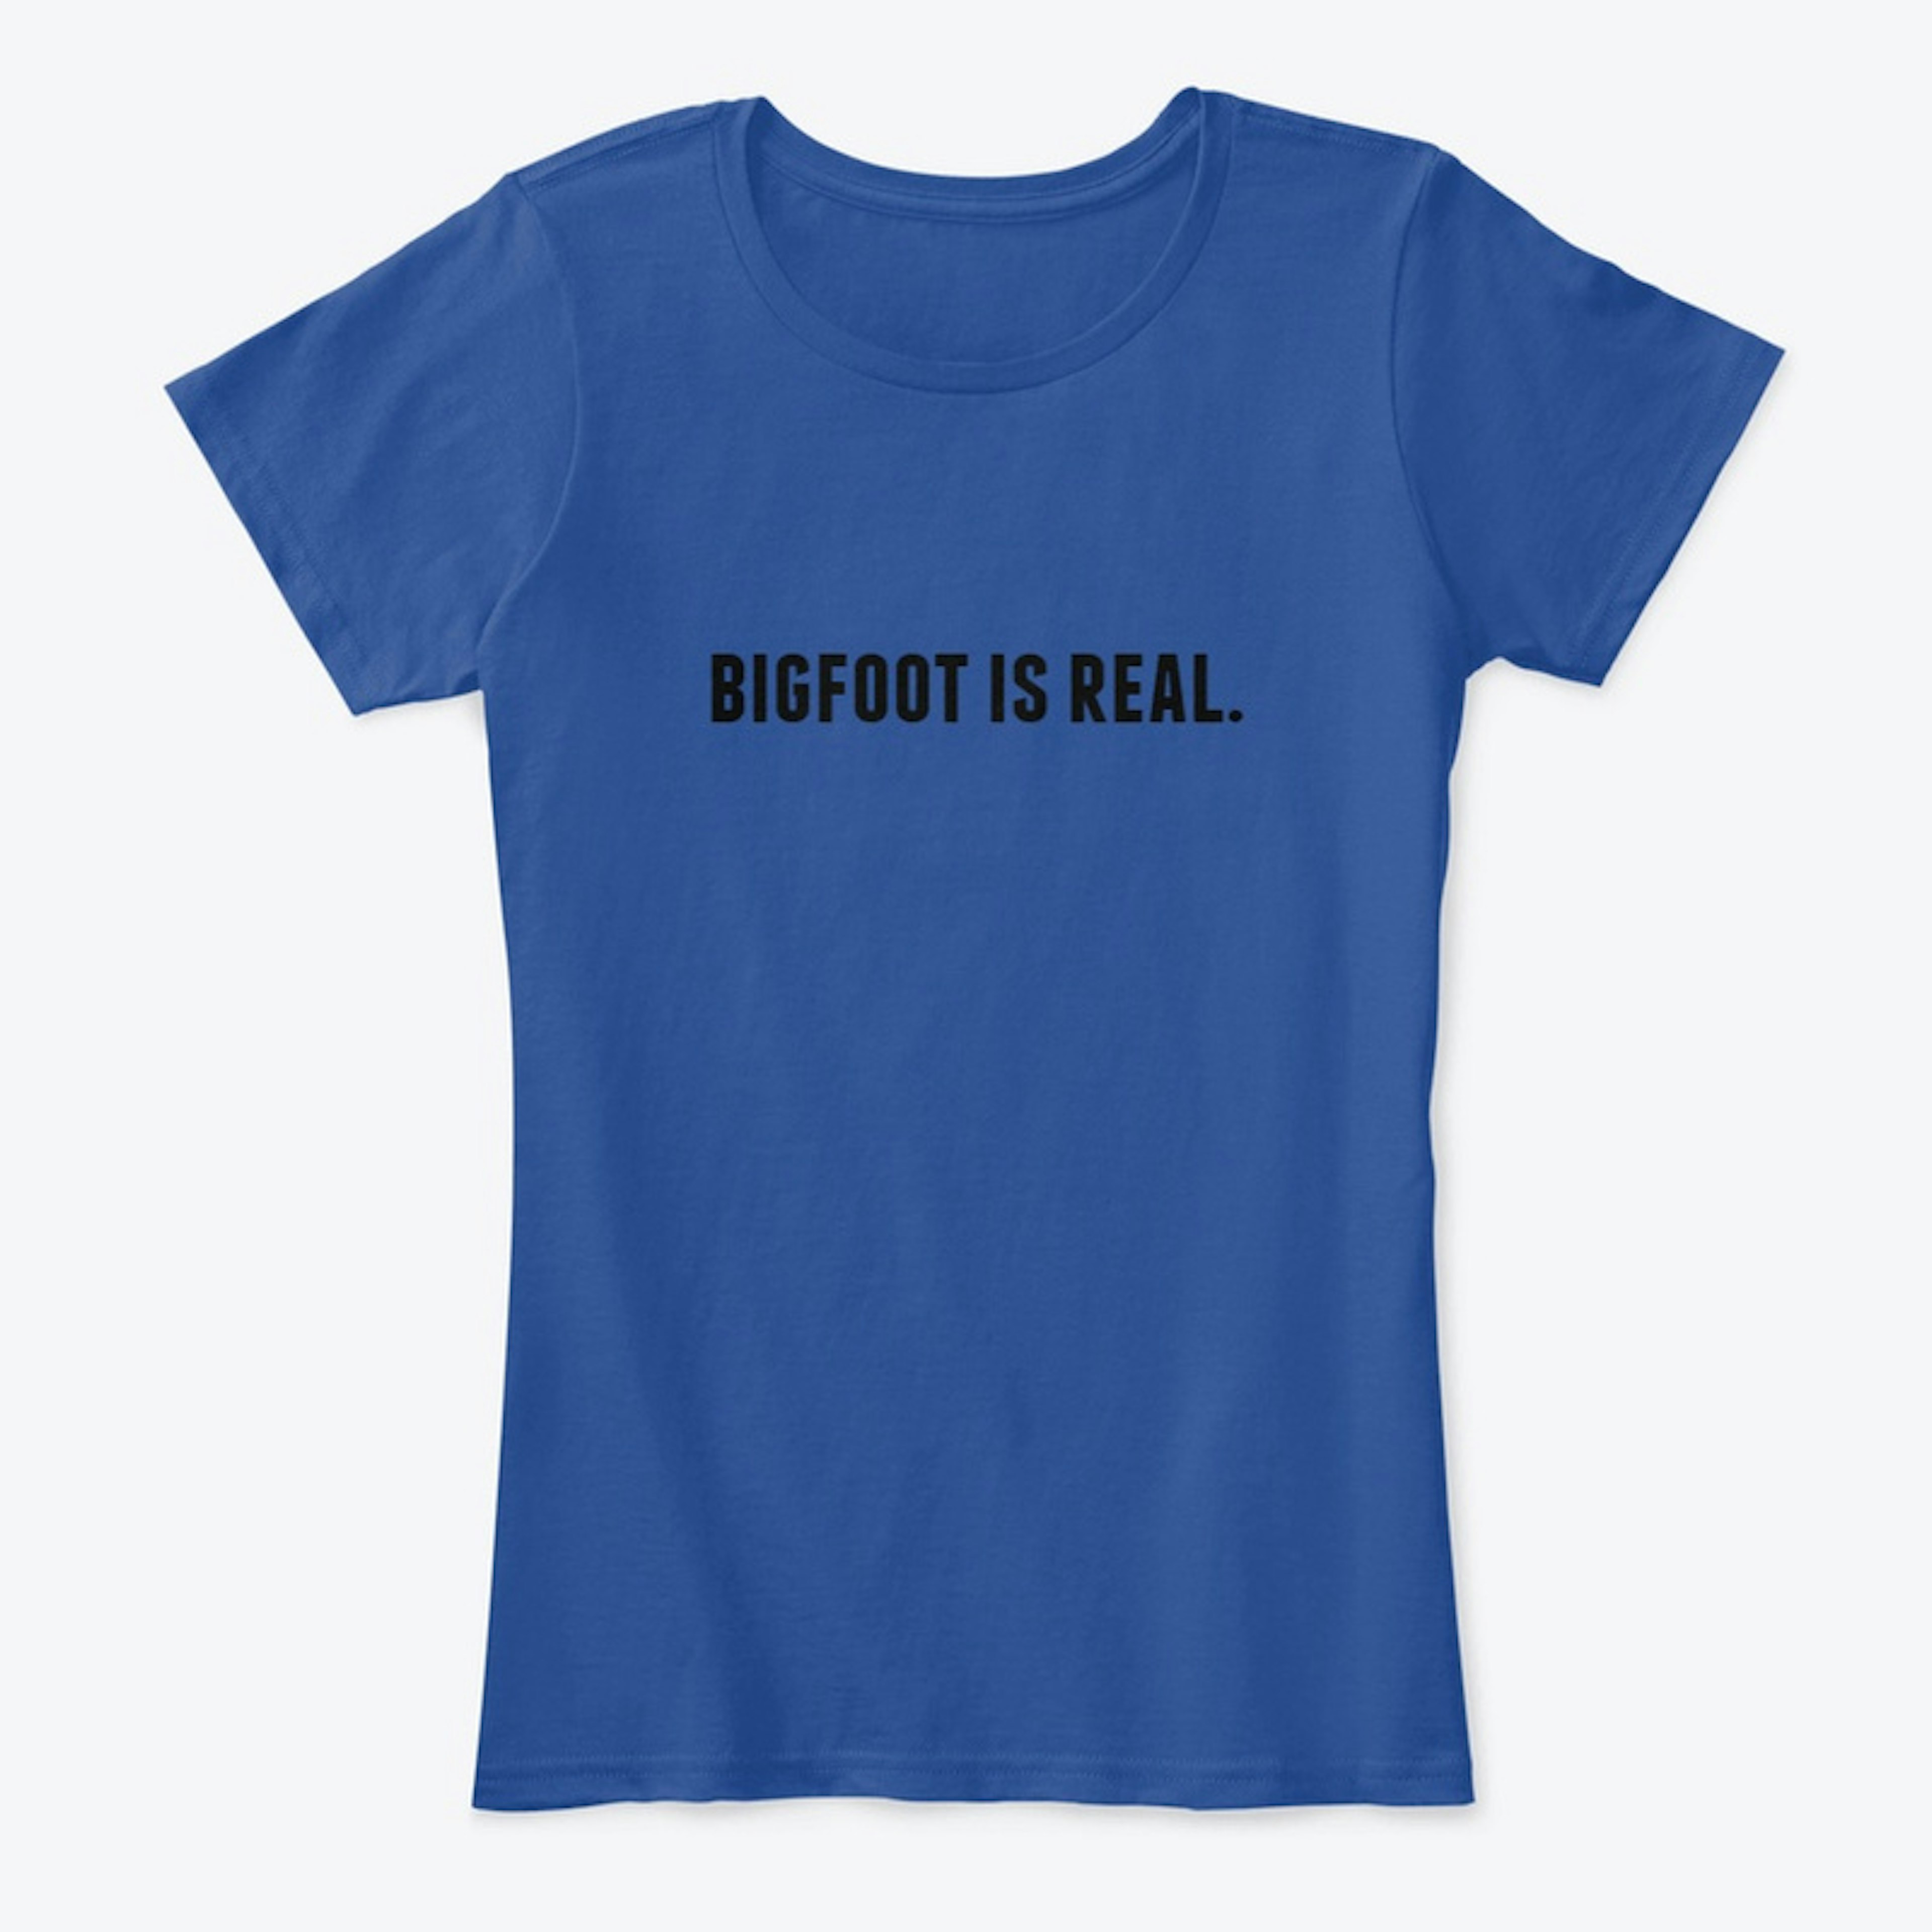 Bigfoot is Real Tee